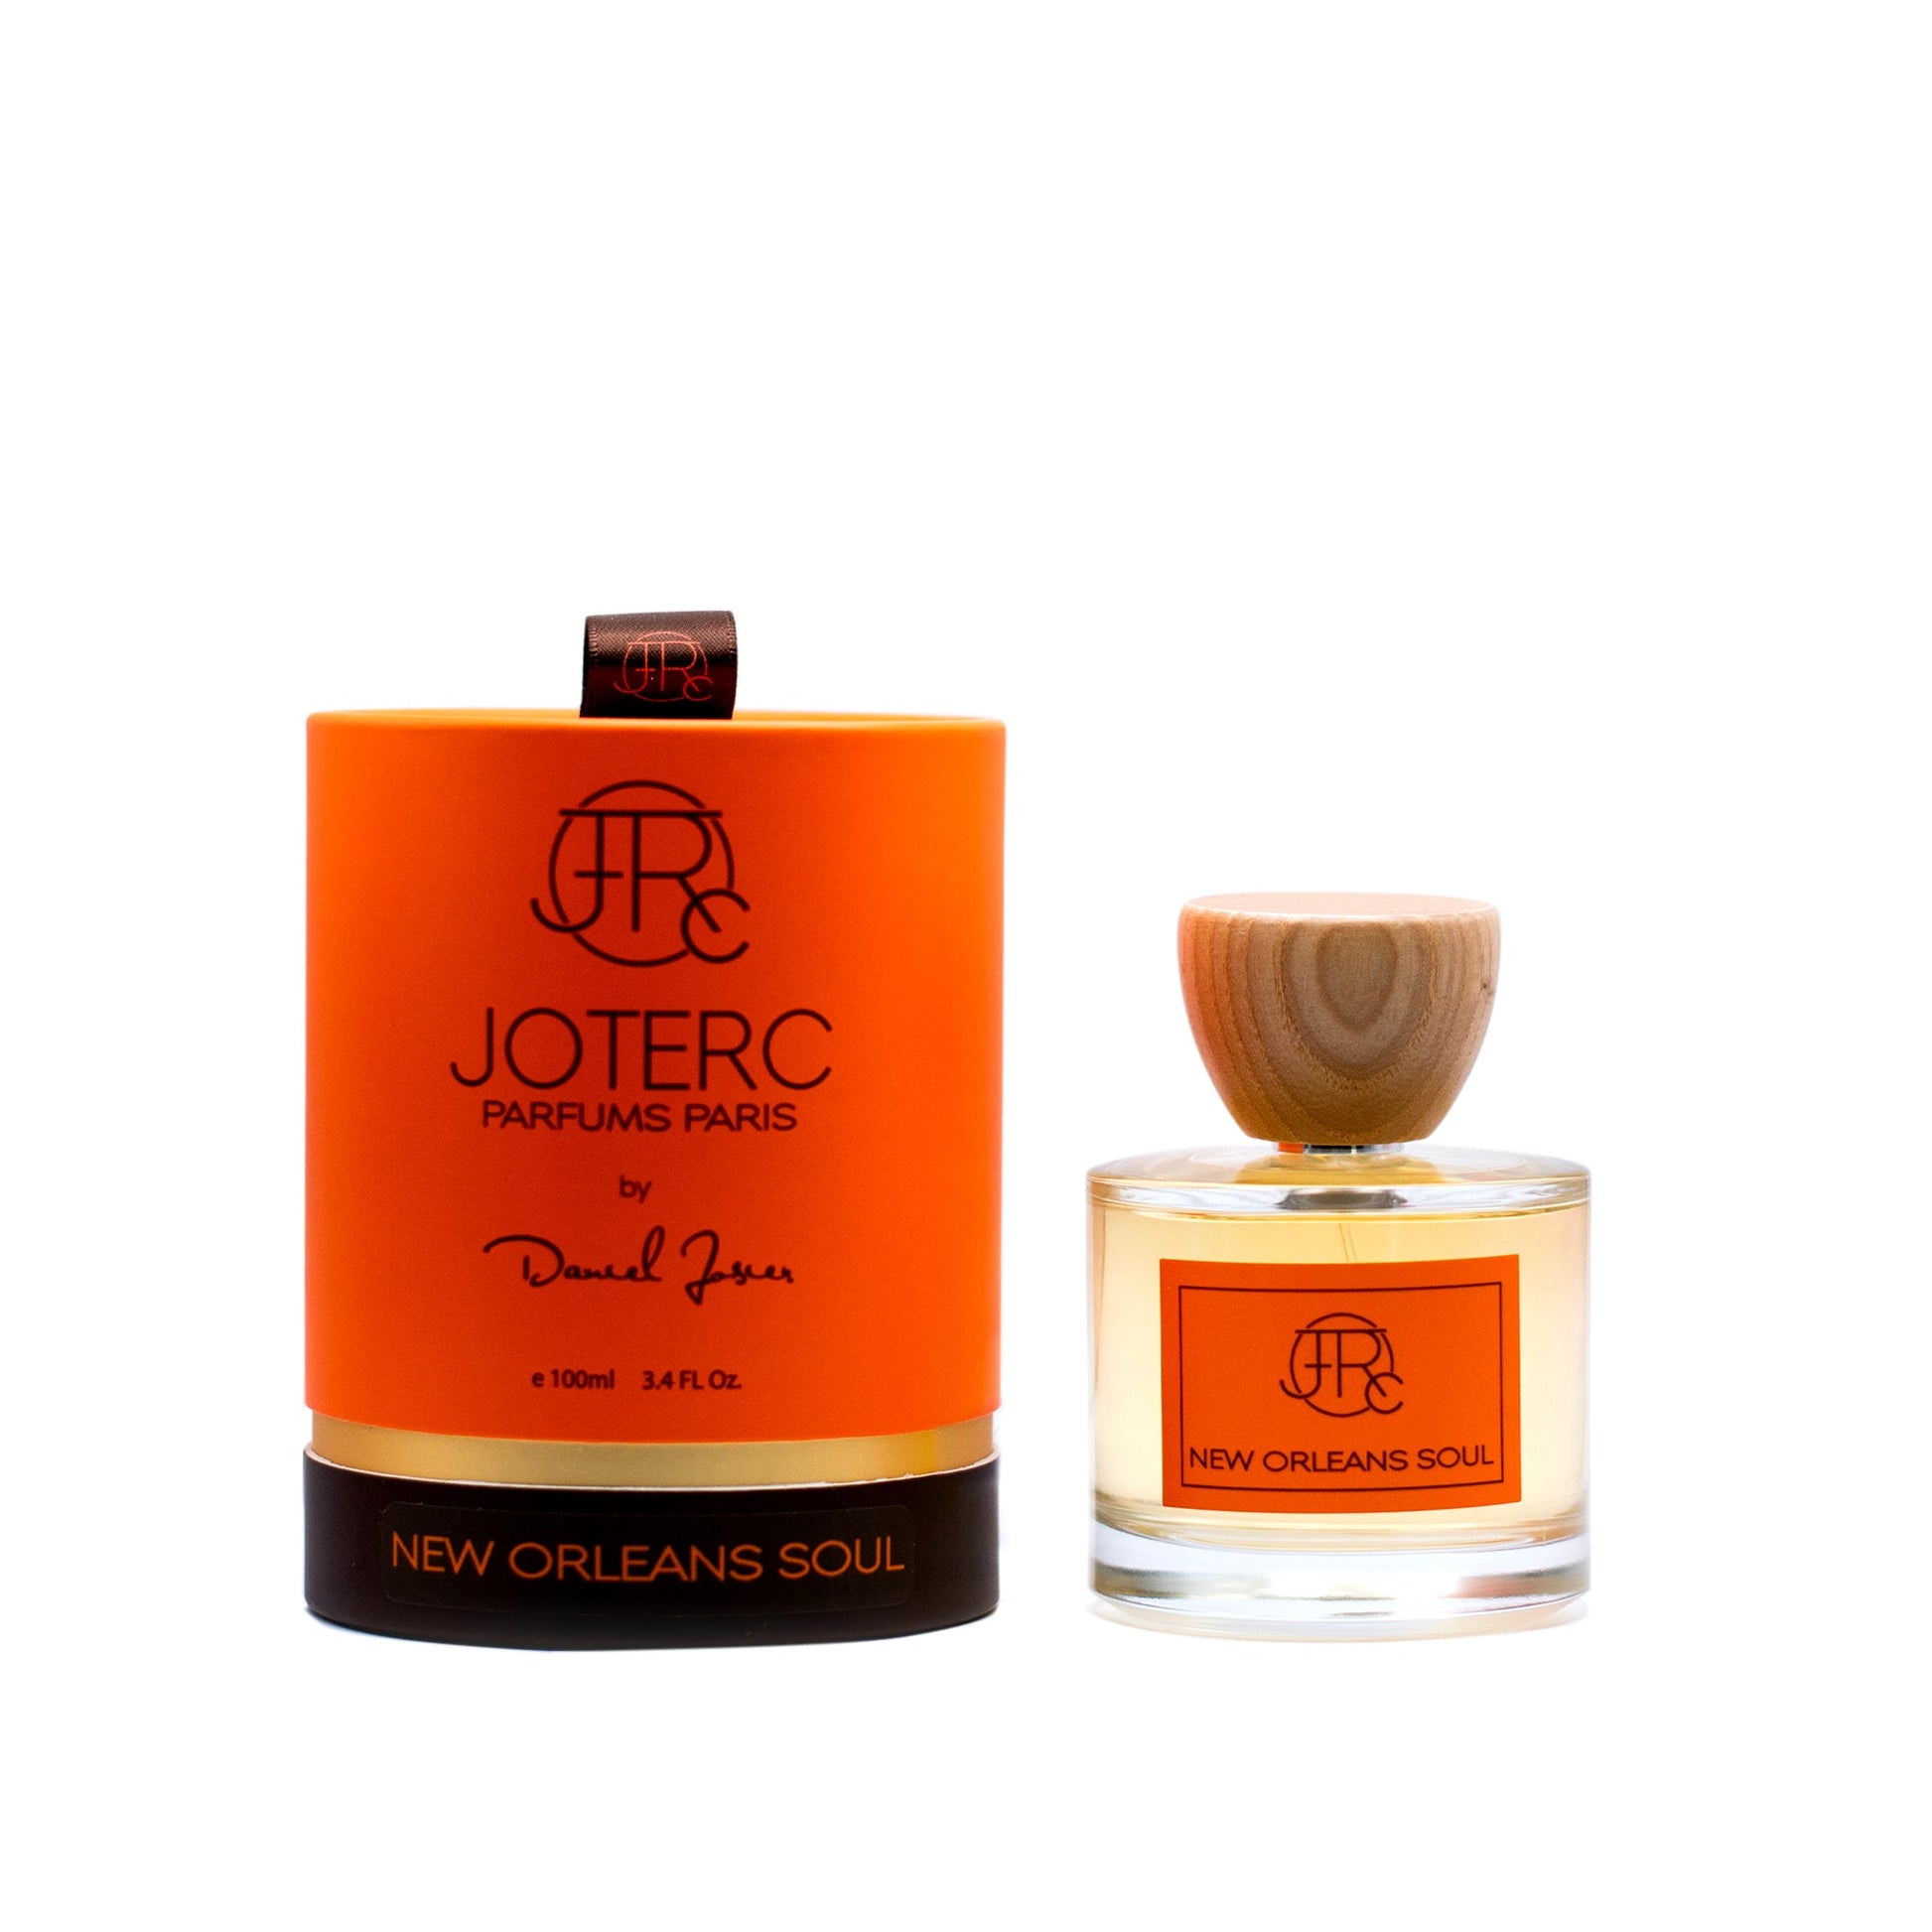 Joterc New Orleans Soul Eau de Parfum Spray by Daniel Josier, Product image 1